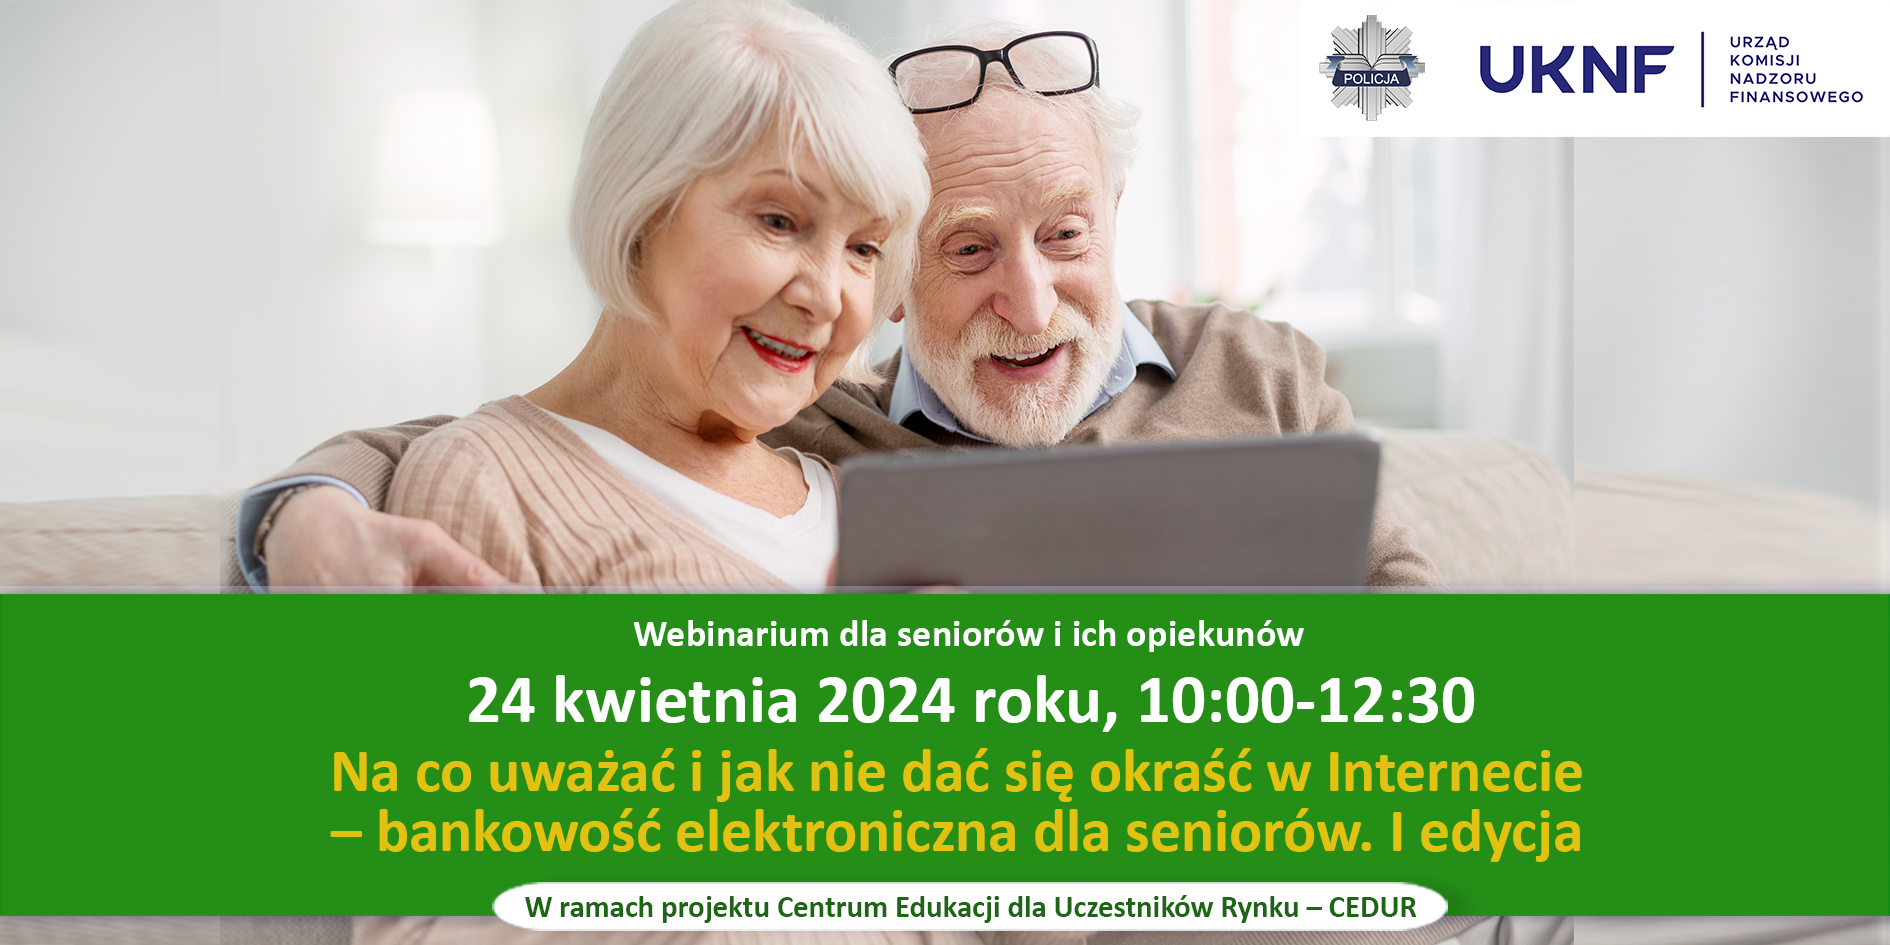 Urząd KNF - zaproszenie na webinarium CEDUR dla seniorów - 24.04.2024 r.